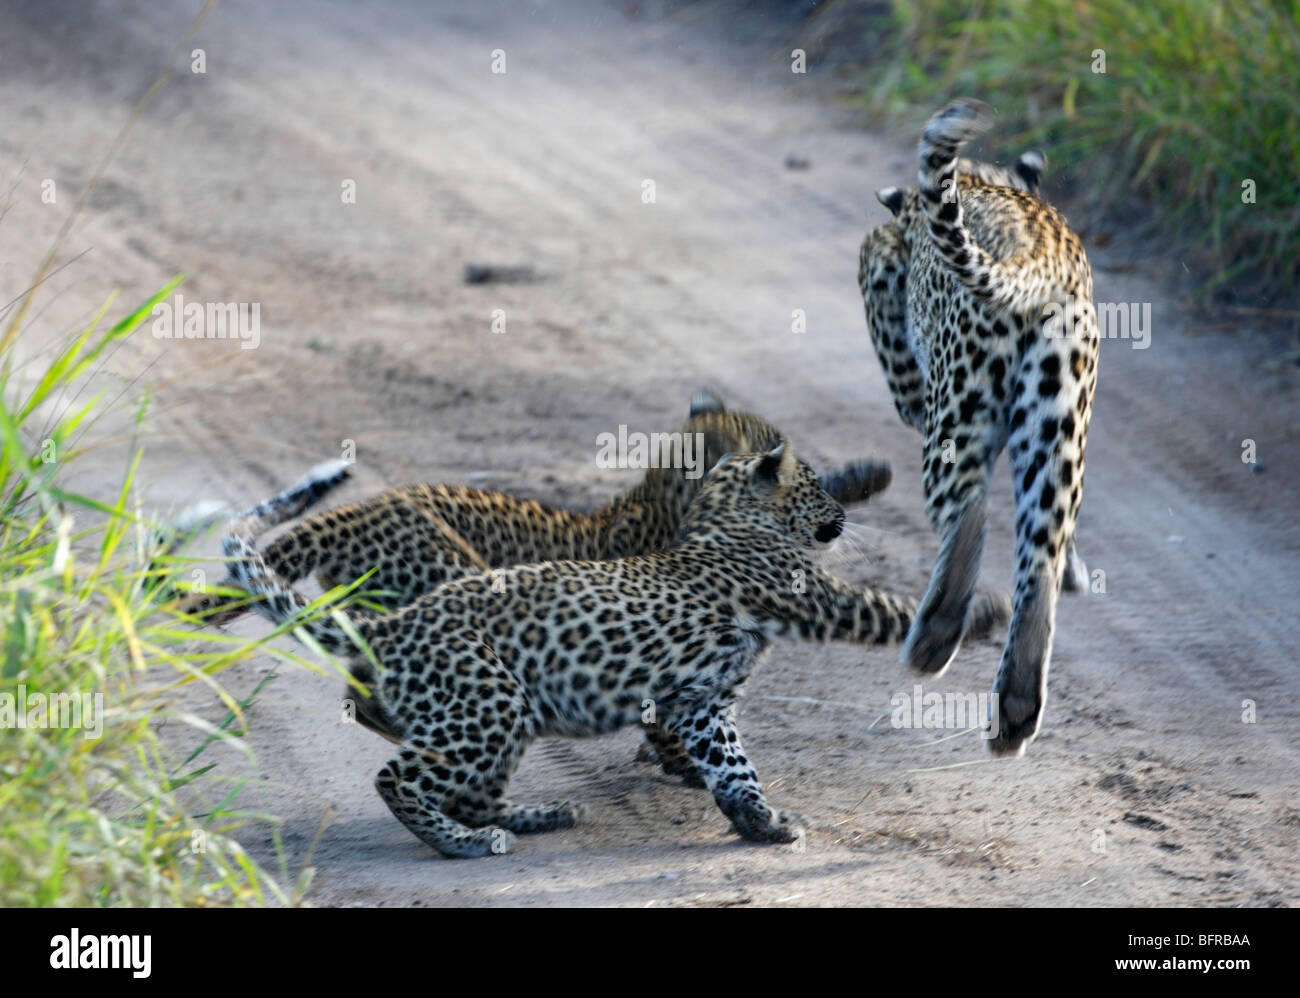 Zwei Leopardenjunge Hinterhalt ihrer Mutter, als sie vorbei an einem hohen Haufen Gras geht Stockfoto